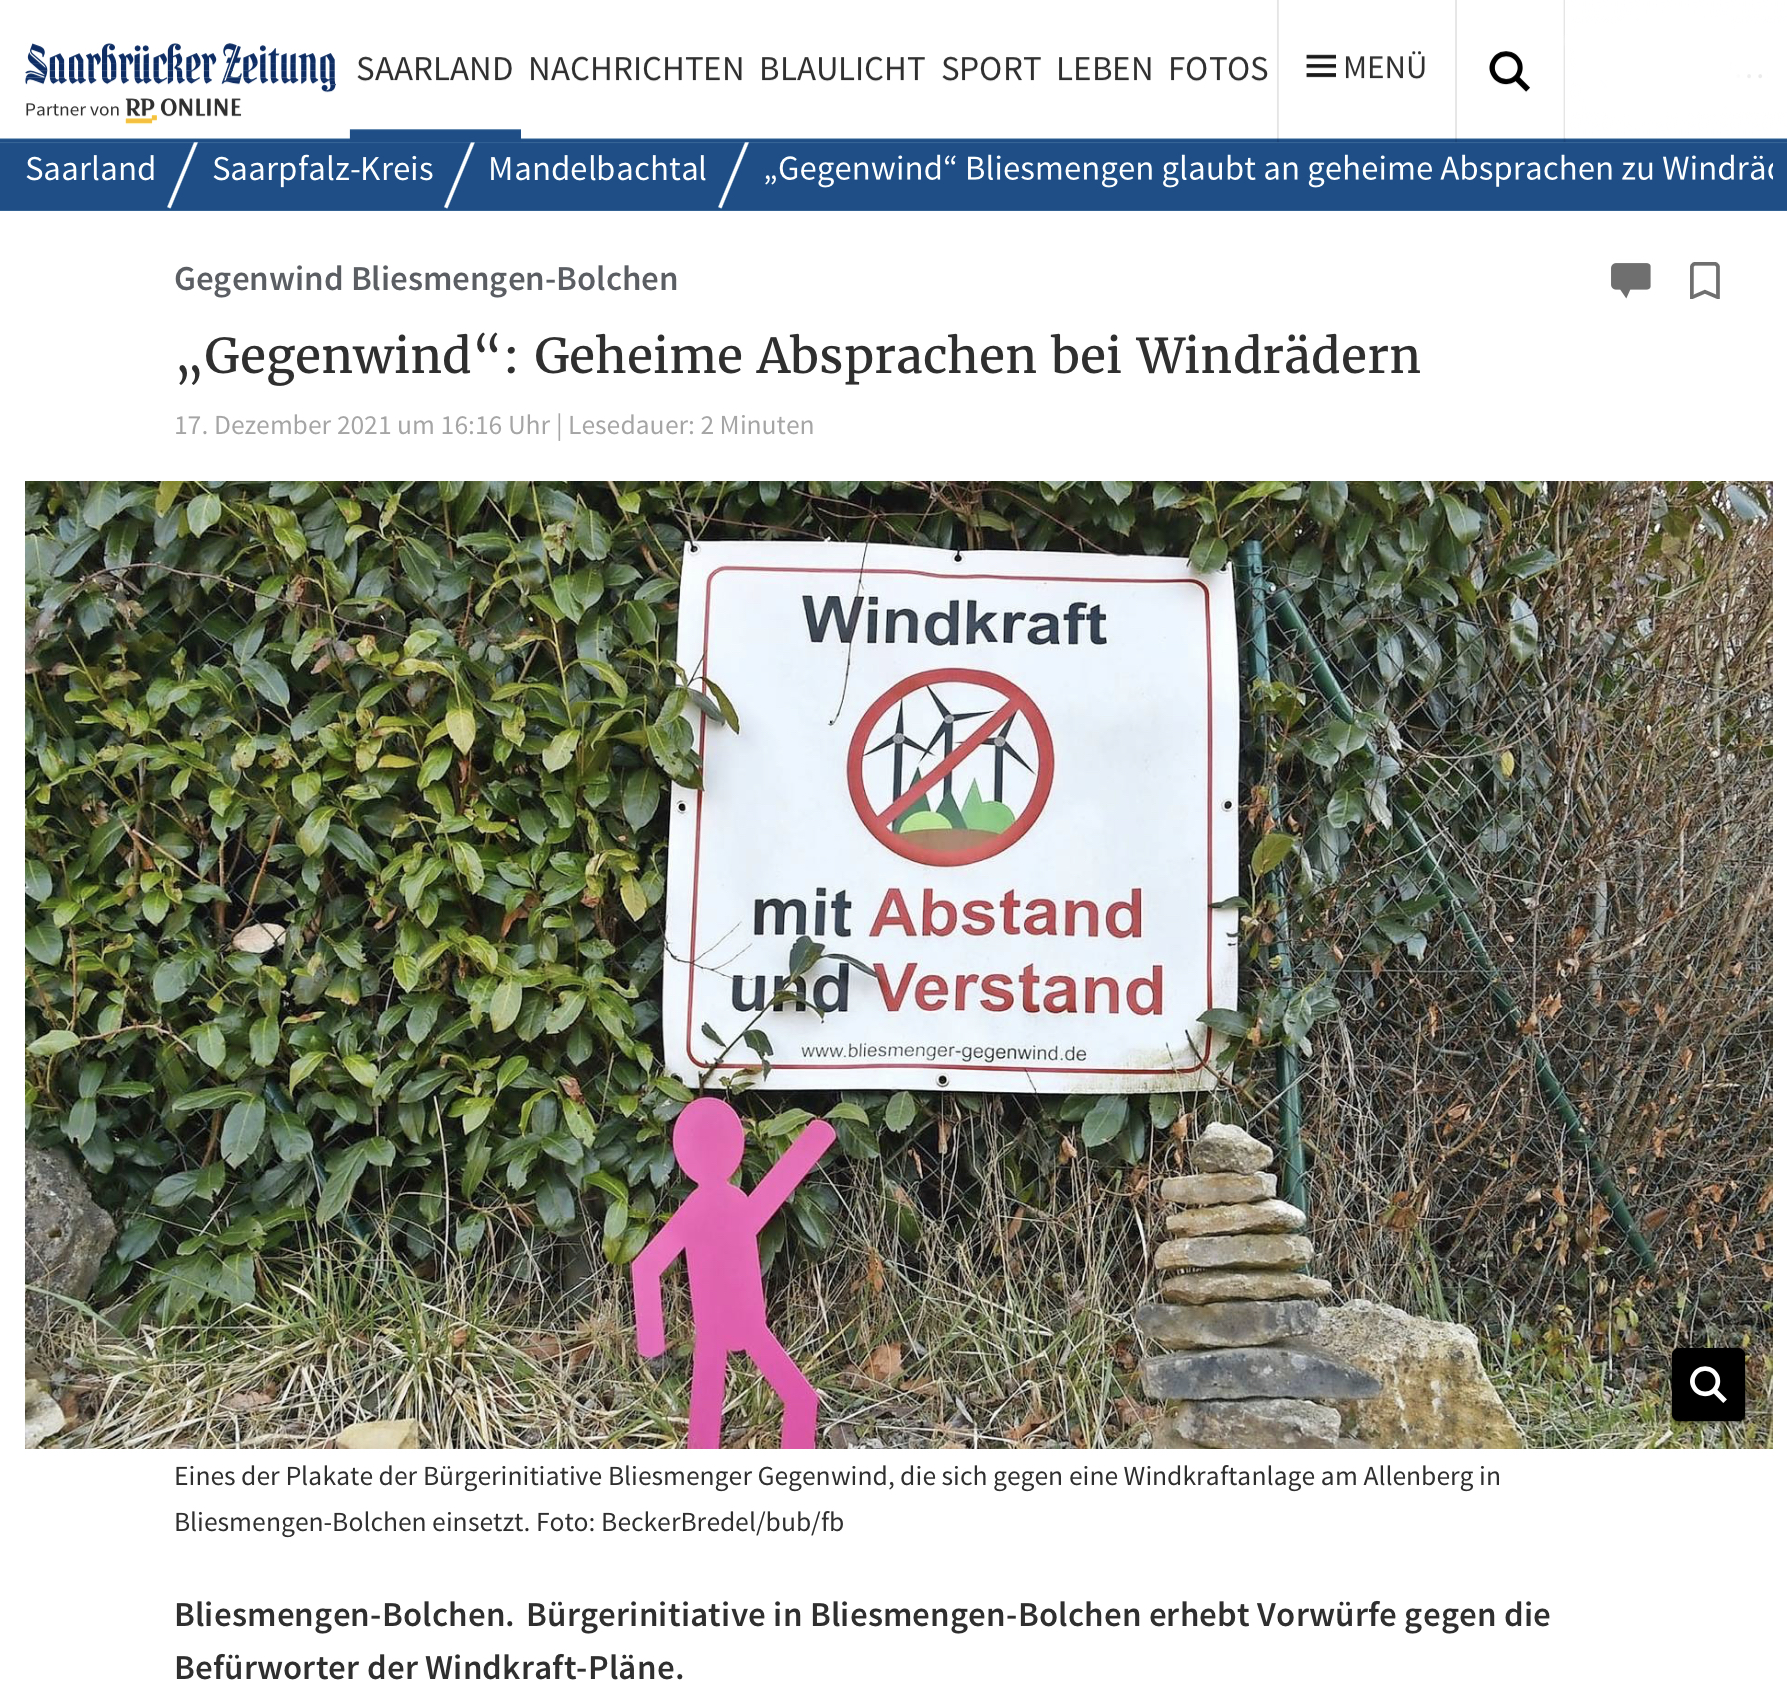 Und es gibt doch Verhandlungen zur Ansiedlungen von Windkraftwerken auf dem Allenberg. Bericht aus Saarbrücker Zeitung vom 17. 12. 2021